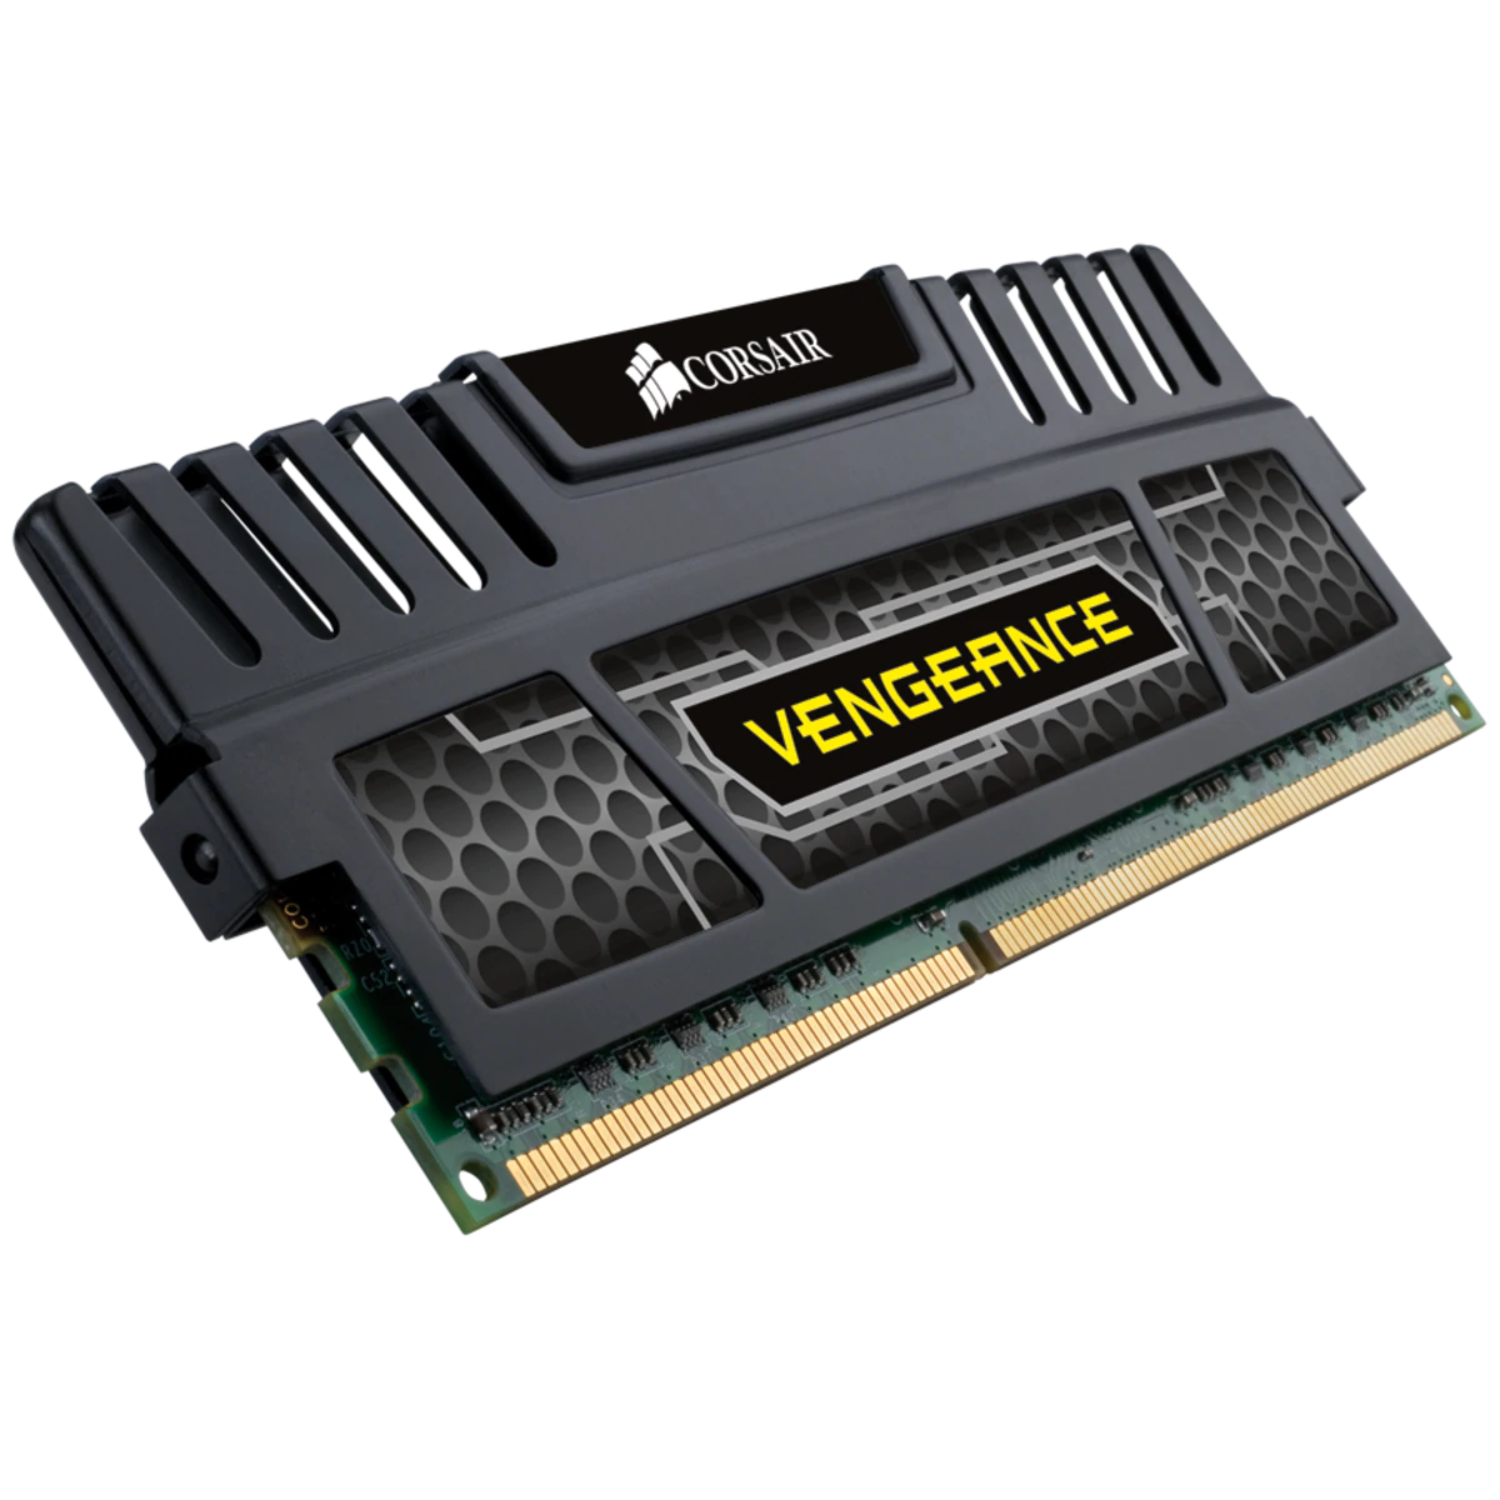 Memória RAM Corsair Vengeance Single Module 4GB / DDR3 / 1600MHz - (CMZ4GX3M1A1600C9)